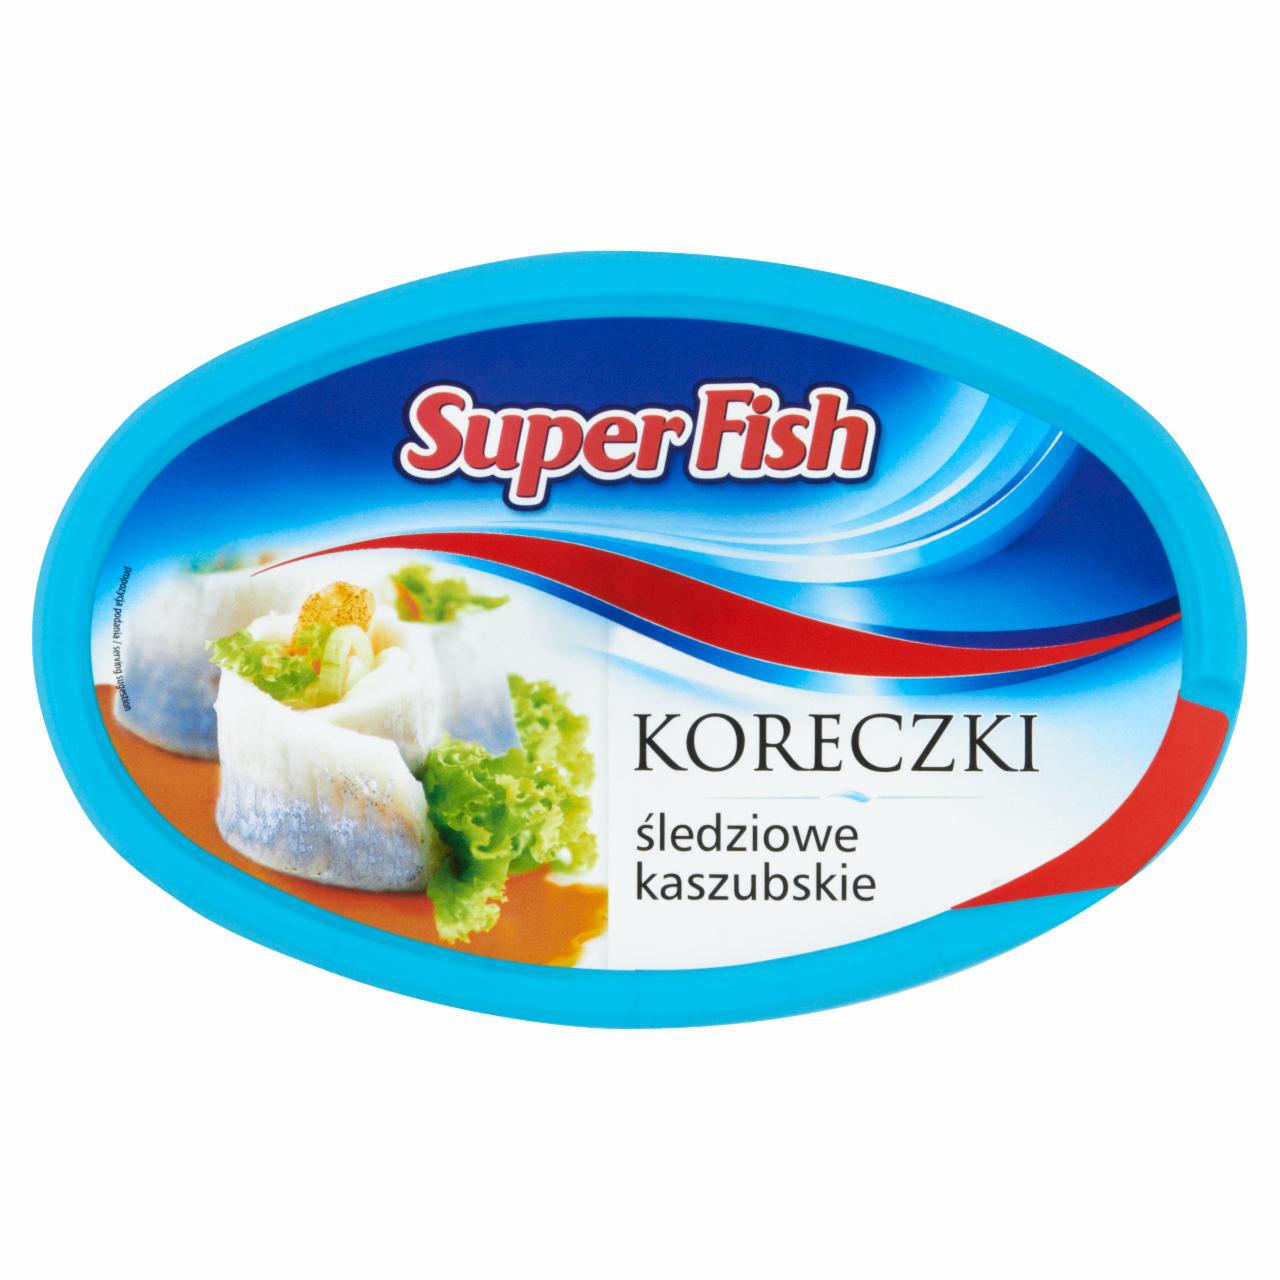 Zdjęcia - SuperFish Koreczki śledziowe kaszubskie 250 g